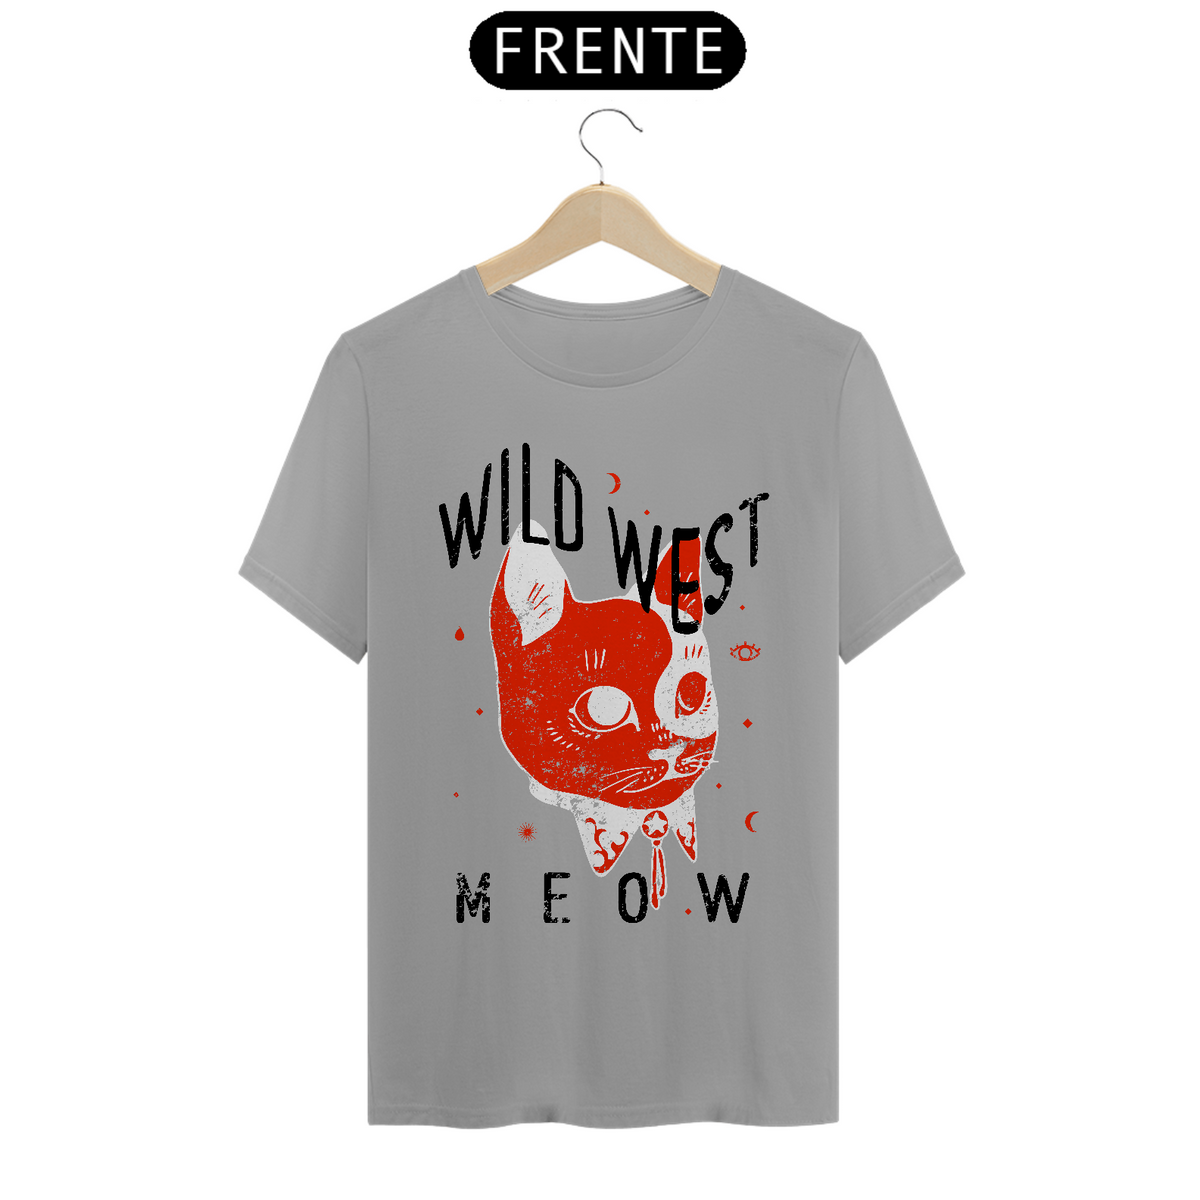 Nome do produto: Wild West - Meow